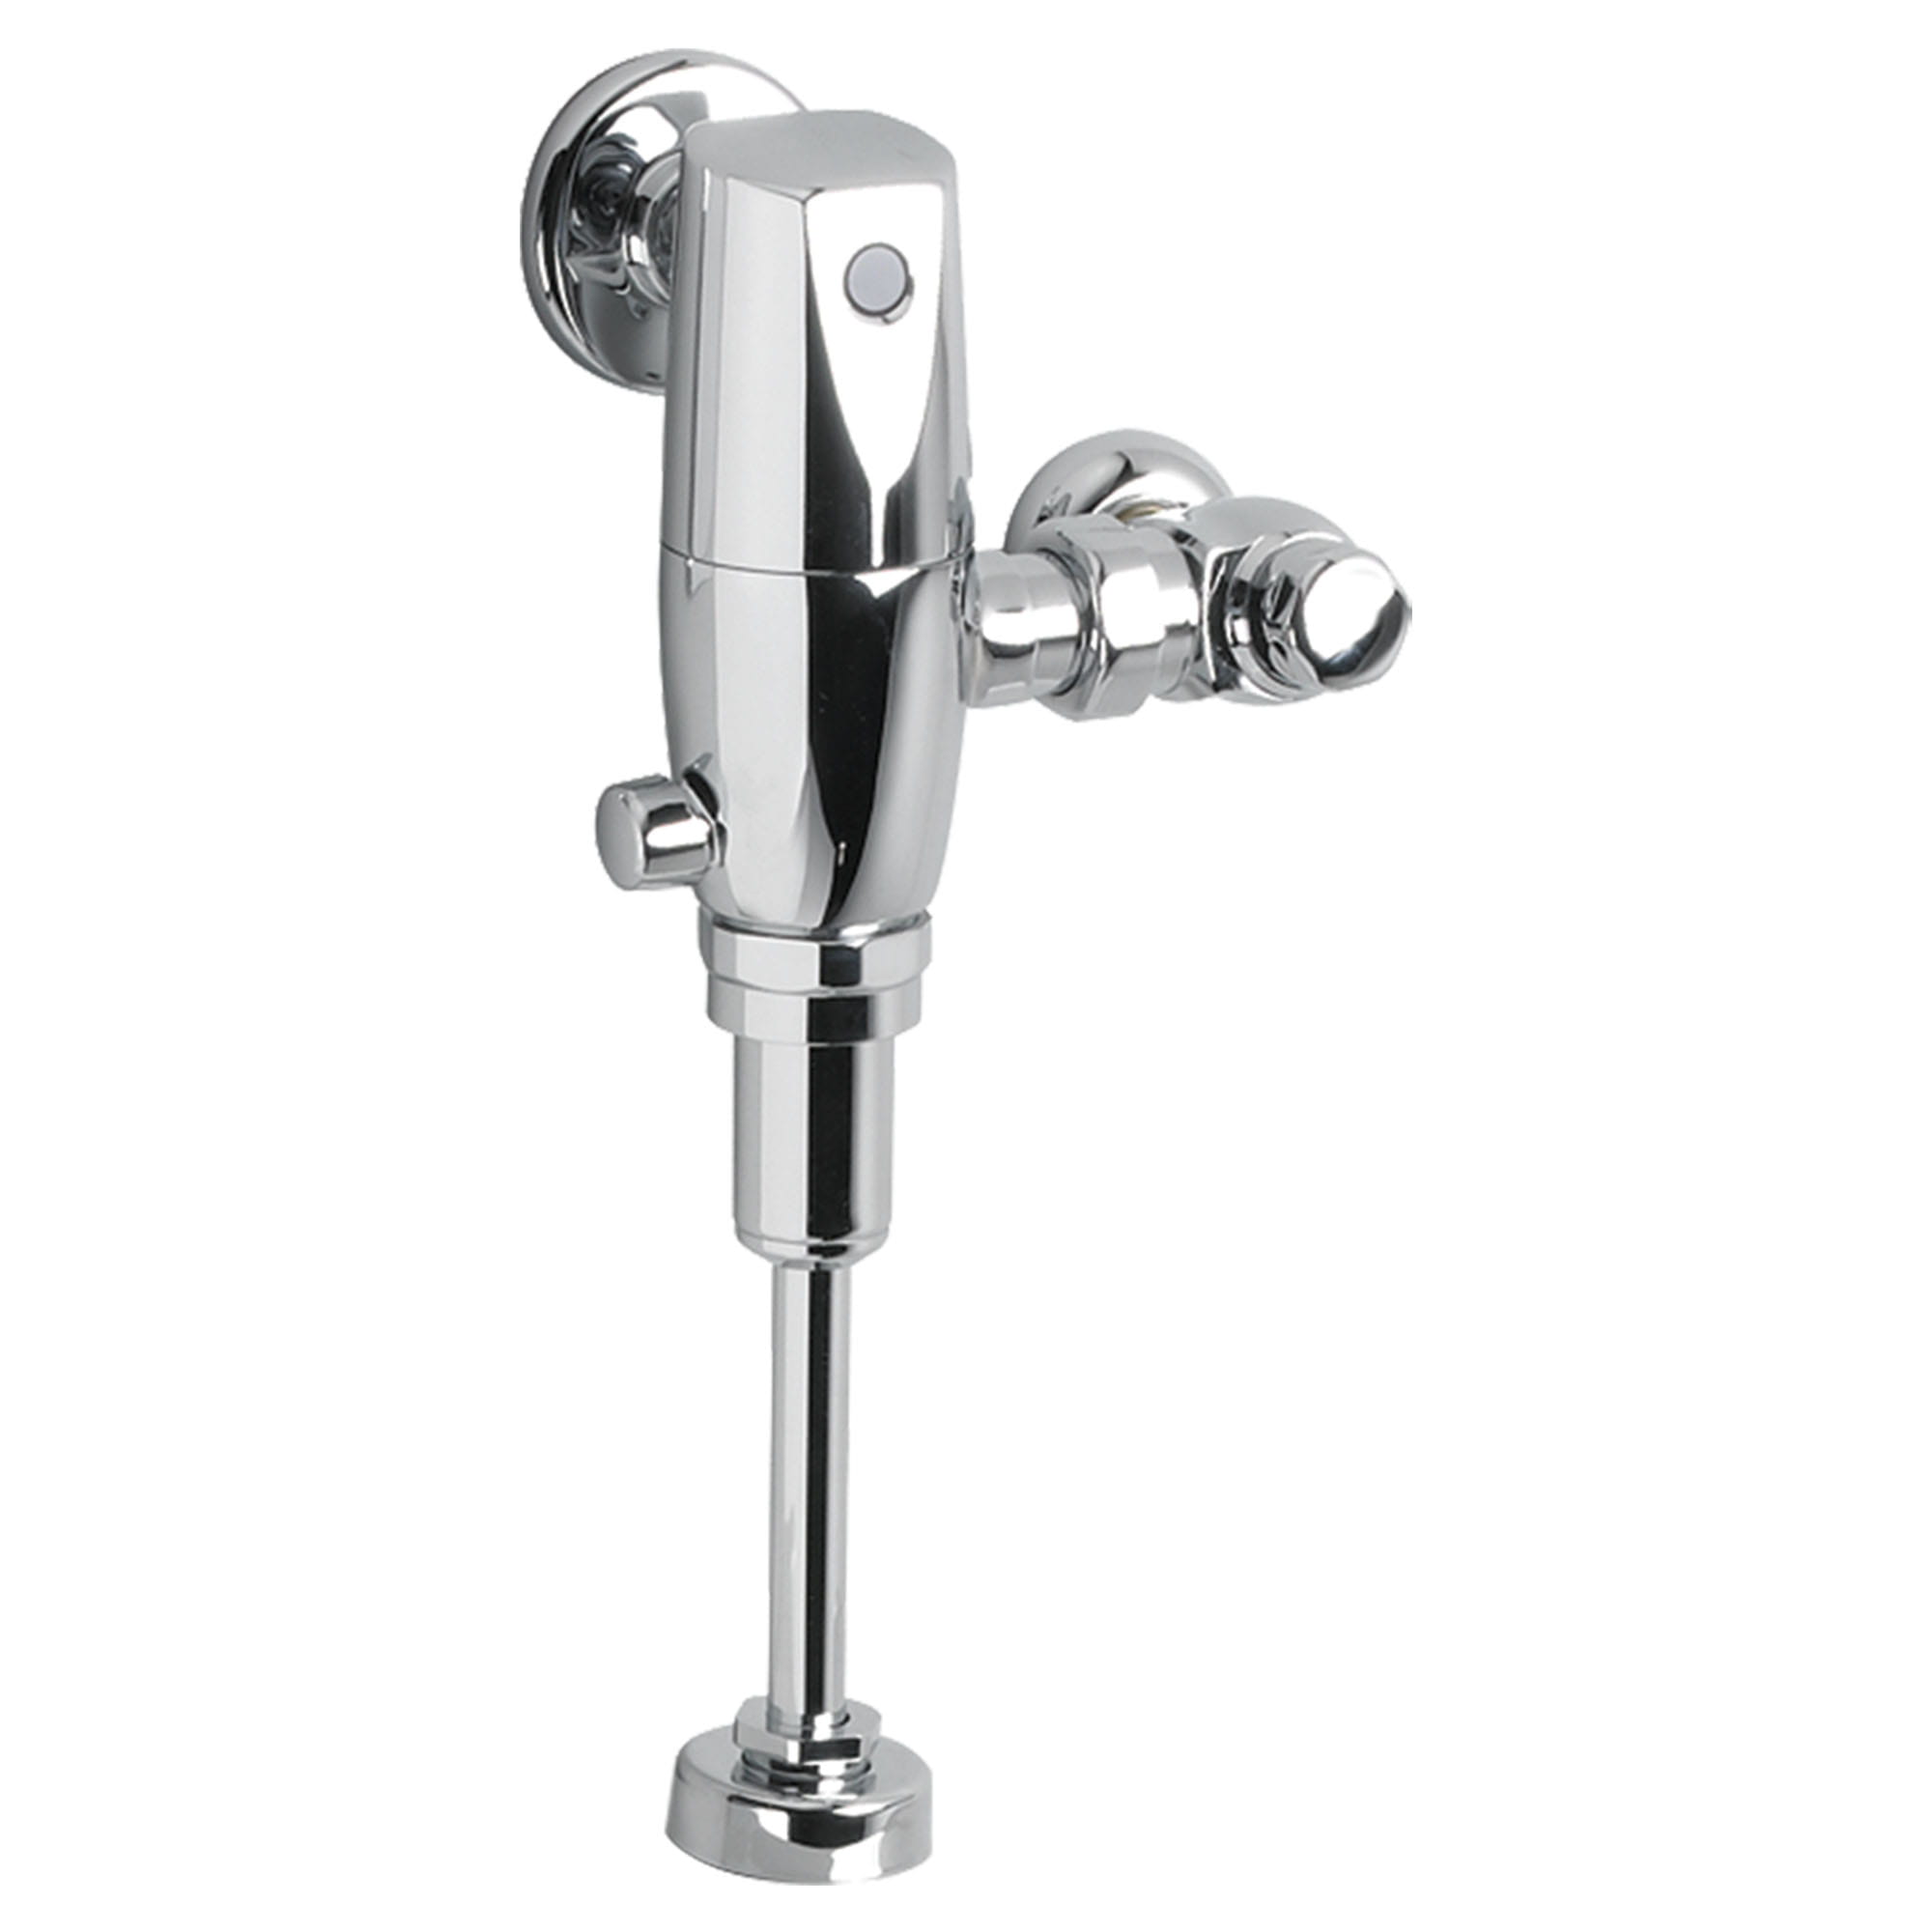 Ultima™ Selectronic - robinet de chasse sans contact pour urinoir, de type à piston, modèle de base, 0,125 gpc/0,5 lpc